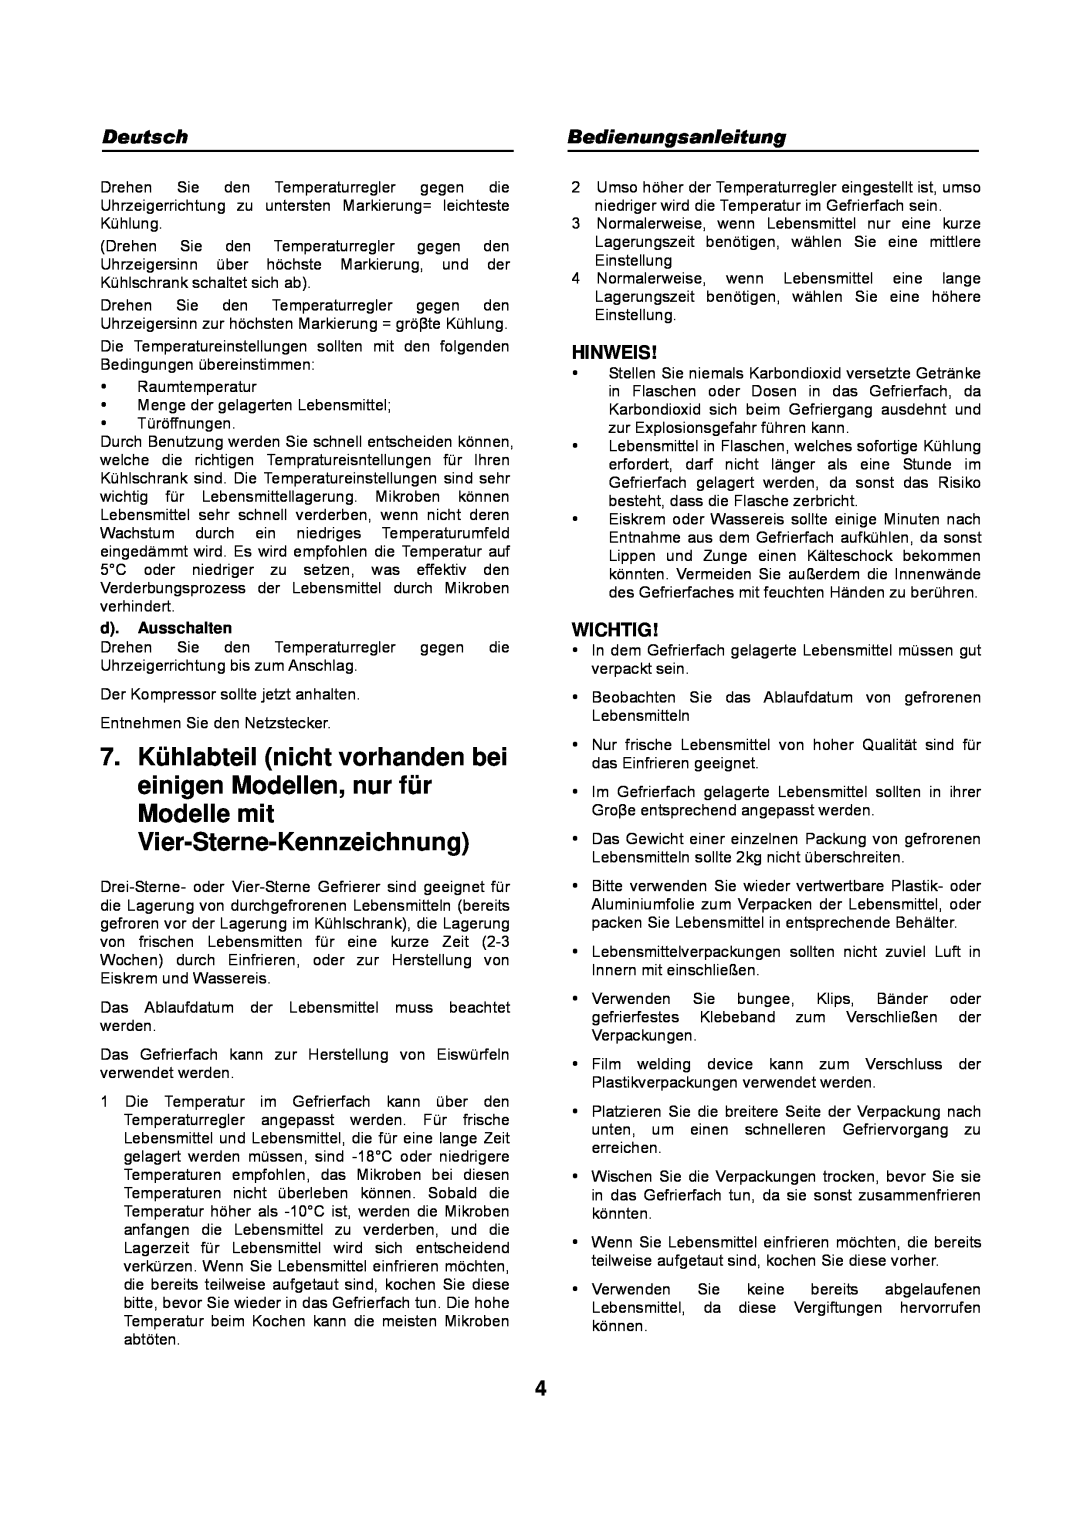 Haier HFN-136, HFN-248 manual Hinweis, Wichtig, d. Ausschalten 